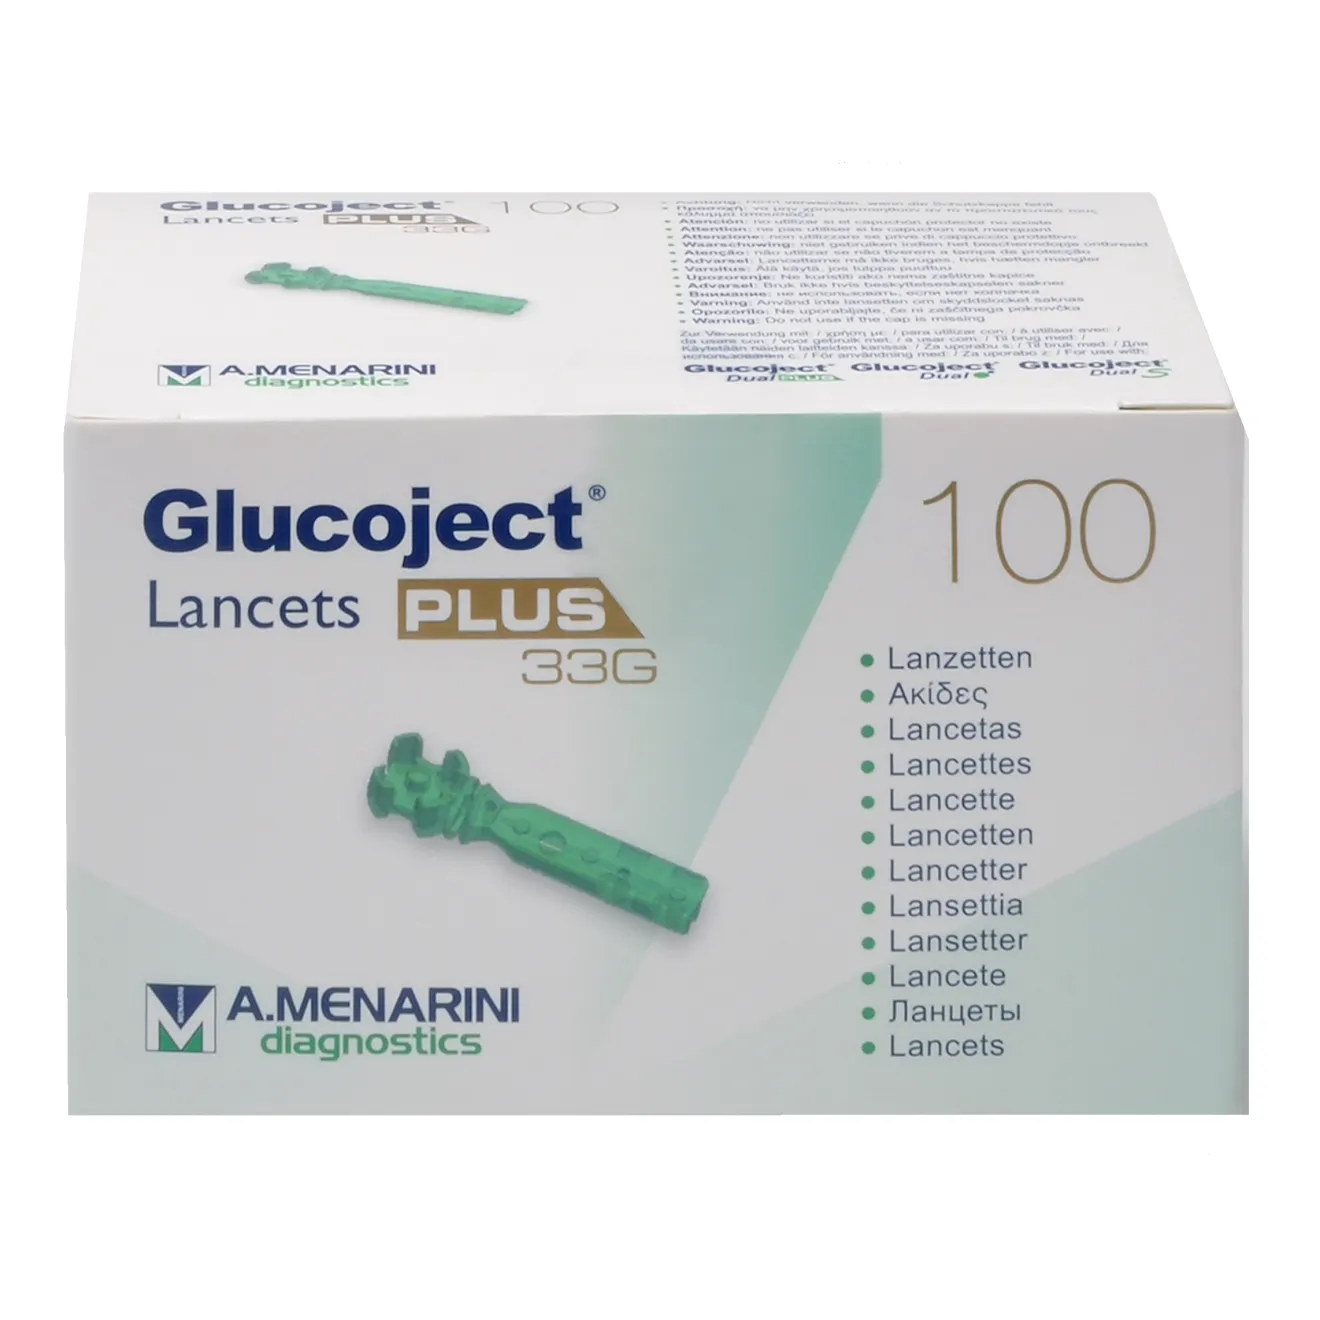 GLUCOJECT Lancets PLUS 33 G 100 ST